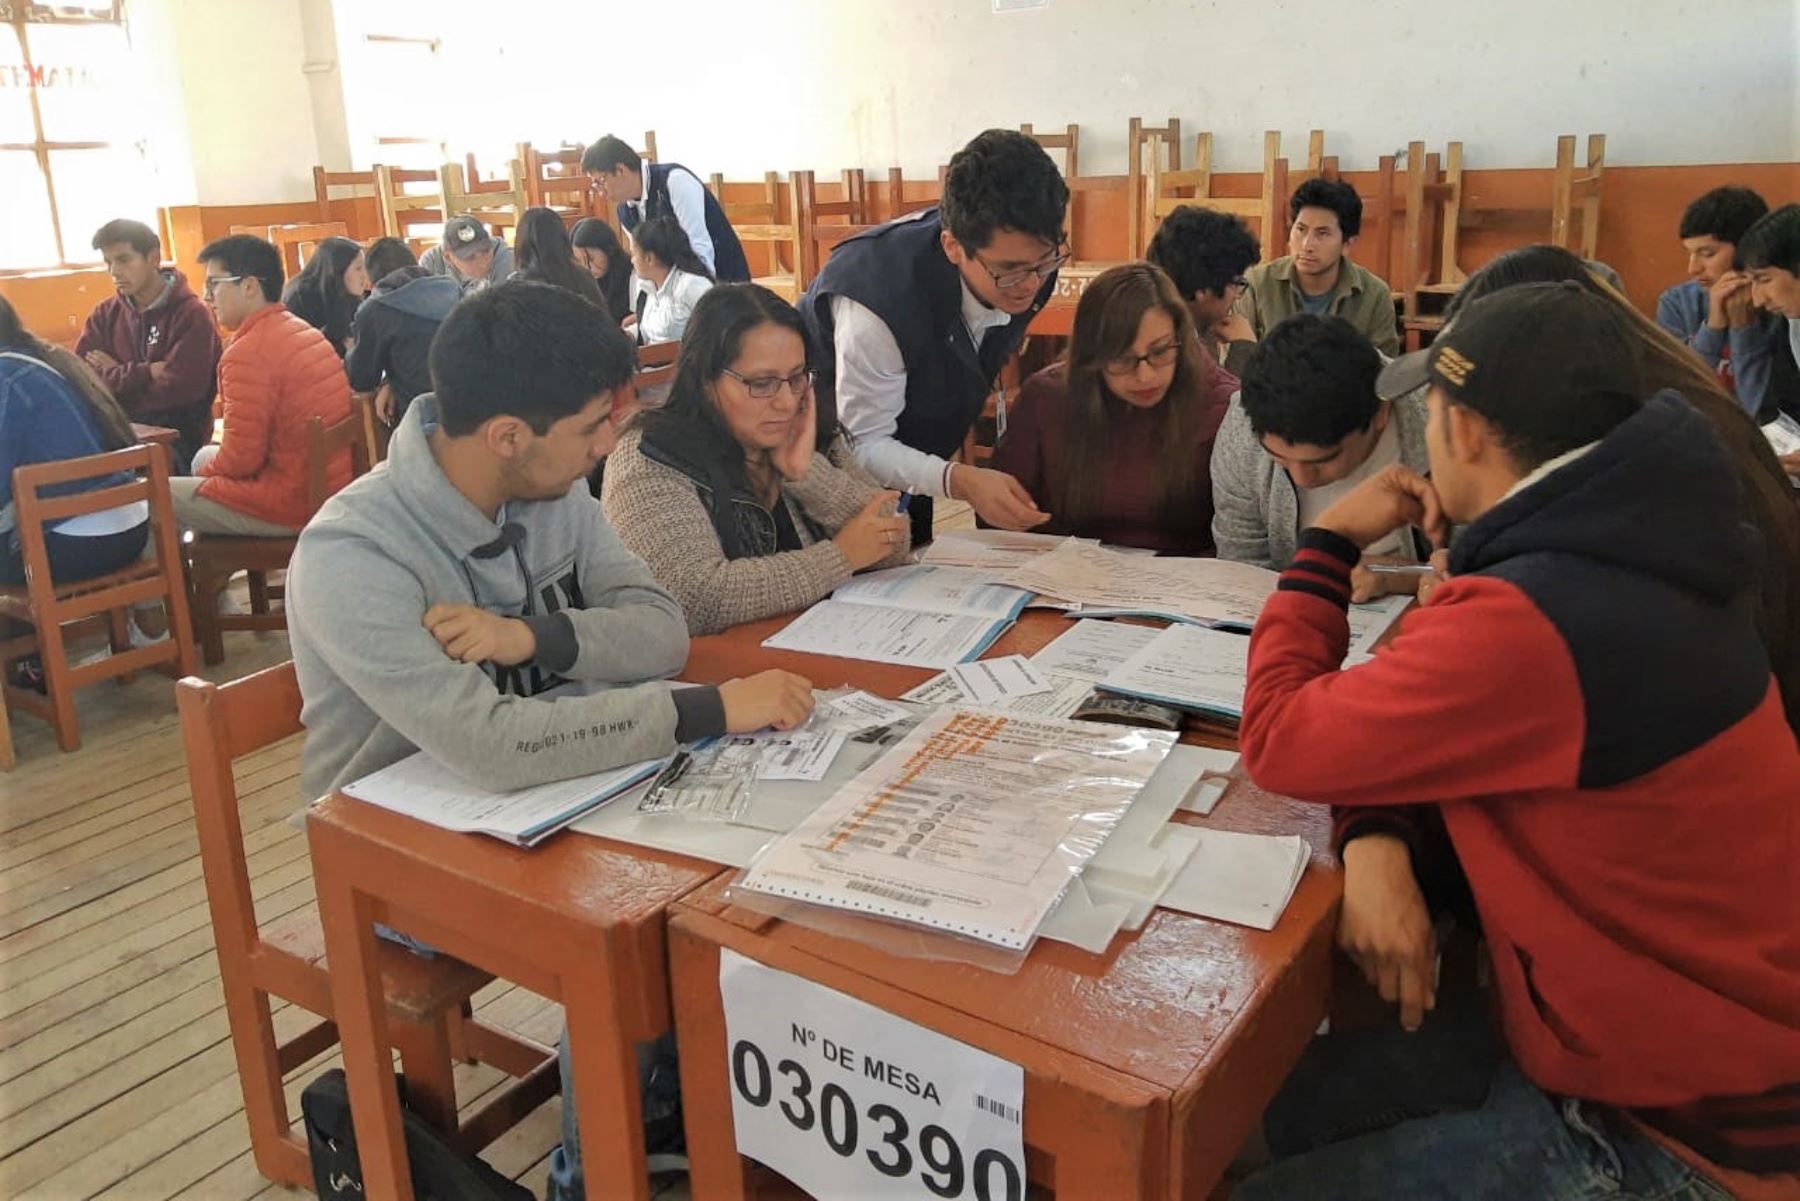 La Oficina Descentralizada de Procesos Electorales (ODPE) Huancayo, realizará mañana domingo la segunda jornada de capacitación para miembros de mesa titulares y suplentes, que fueron elegidos mediante sorteo, en el marco de las próximas Elecciones Congresales Extraordinarias (ECE) 2020.